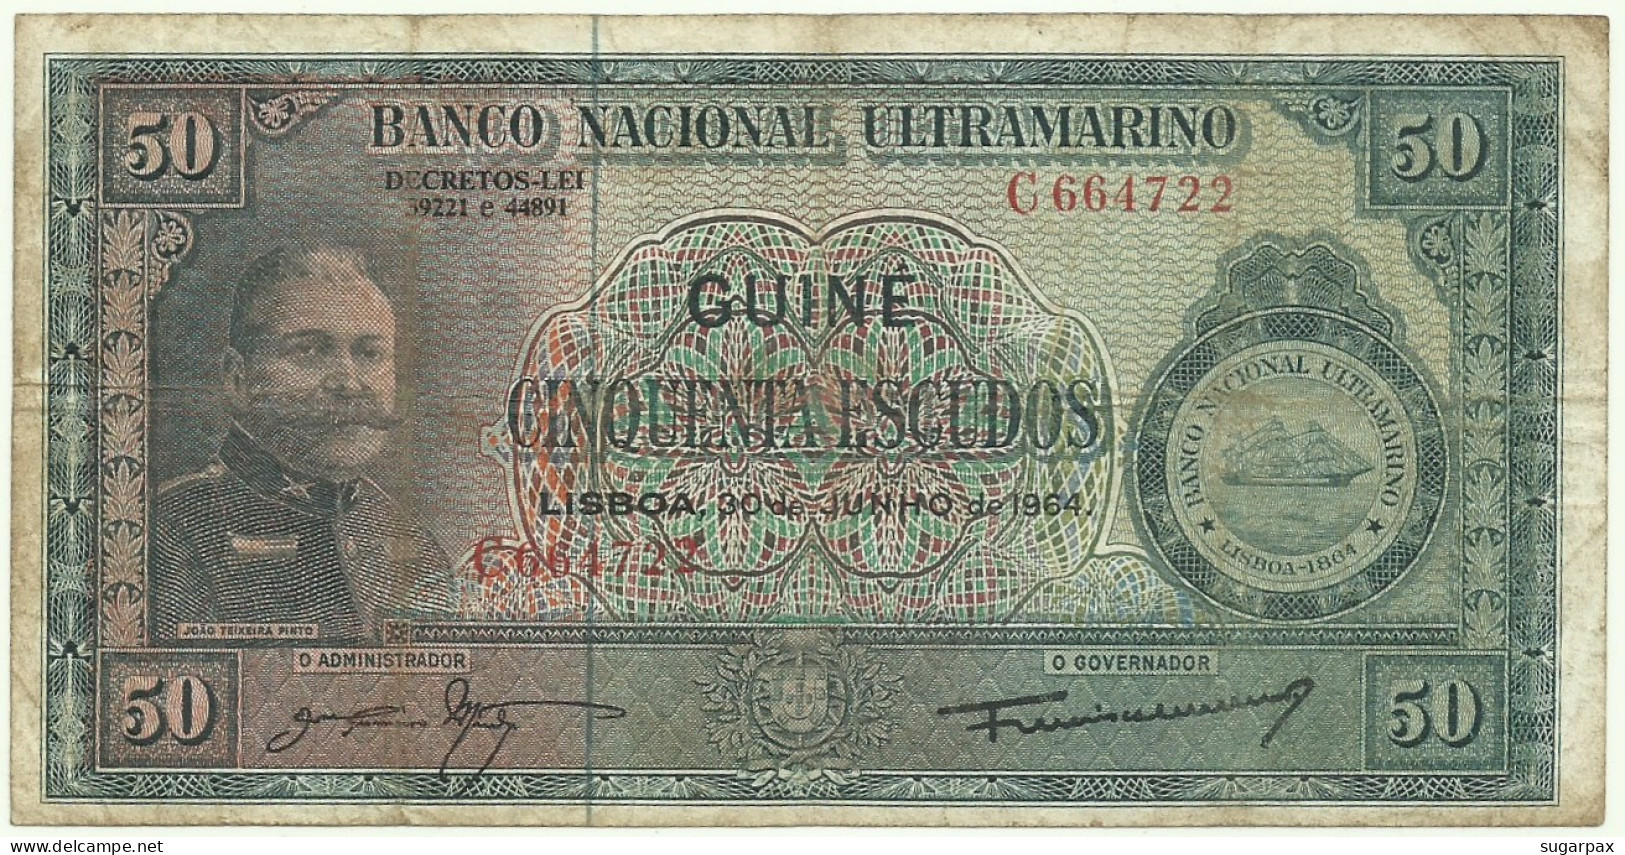 Guiné-Bissau - 50 Escudos - 30.06.1964 - P 40 - Sign Varieties - João Teixeira Pinto - PORTUGAL - Guinea-Bissau